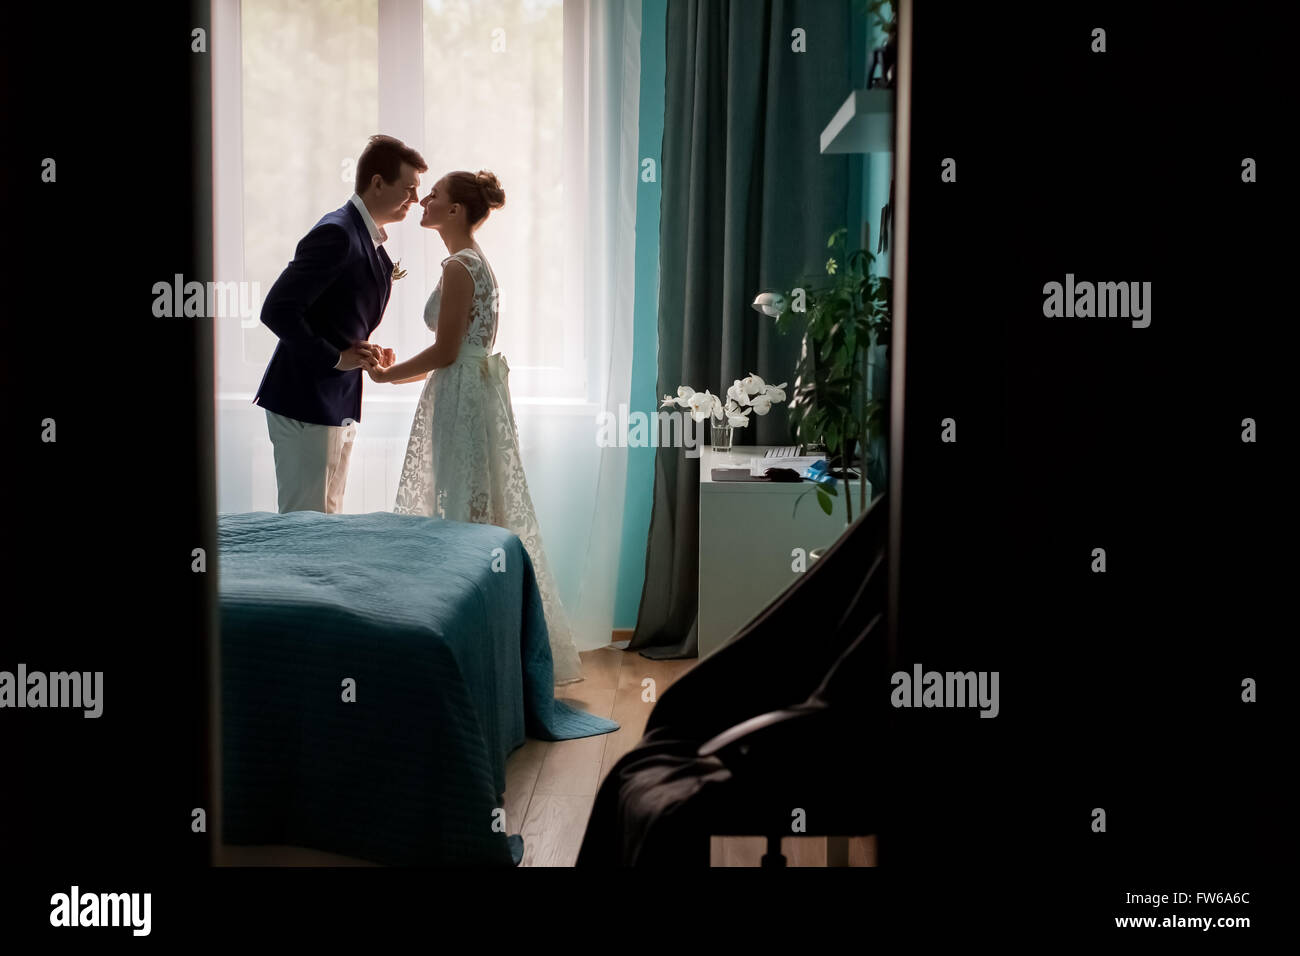 Completa la foto de la silueta oscura de la pareja nupcial los novios besándose en ventana Interior Dormitorios en interiores, de fondo Foto de stock